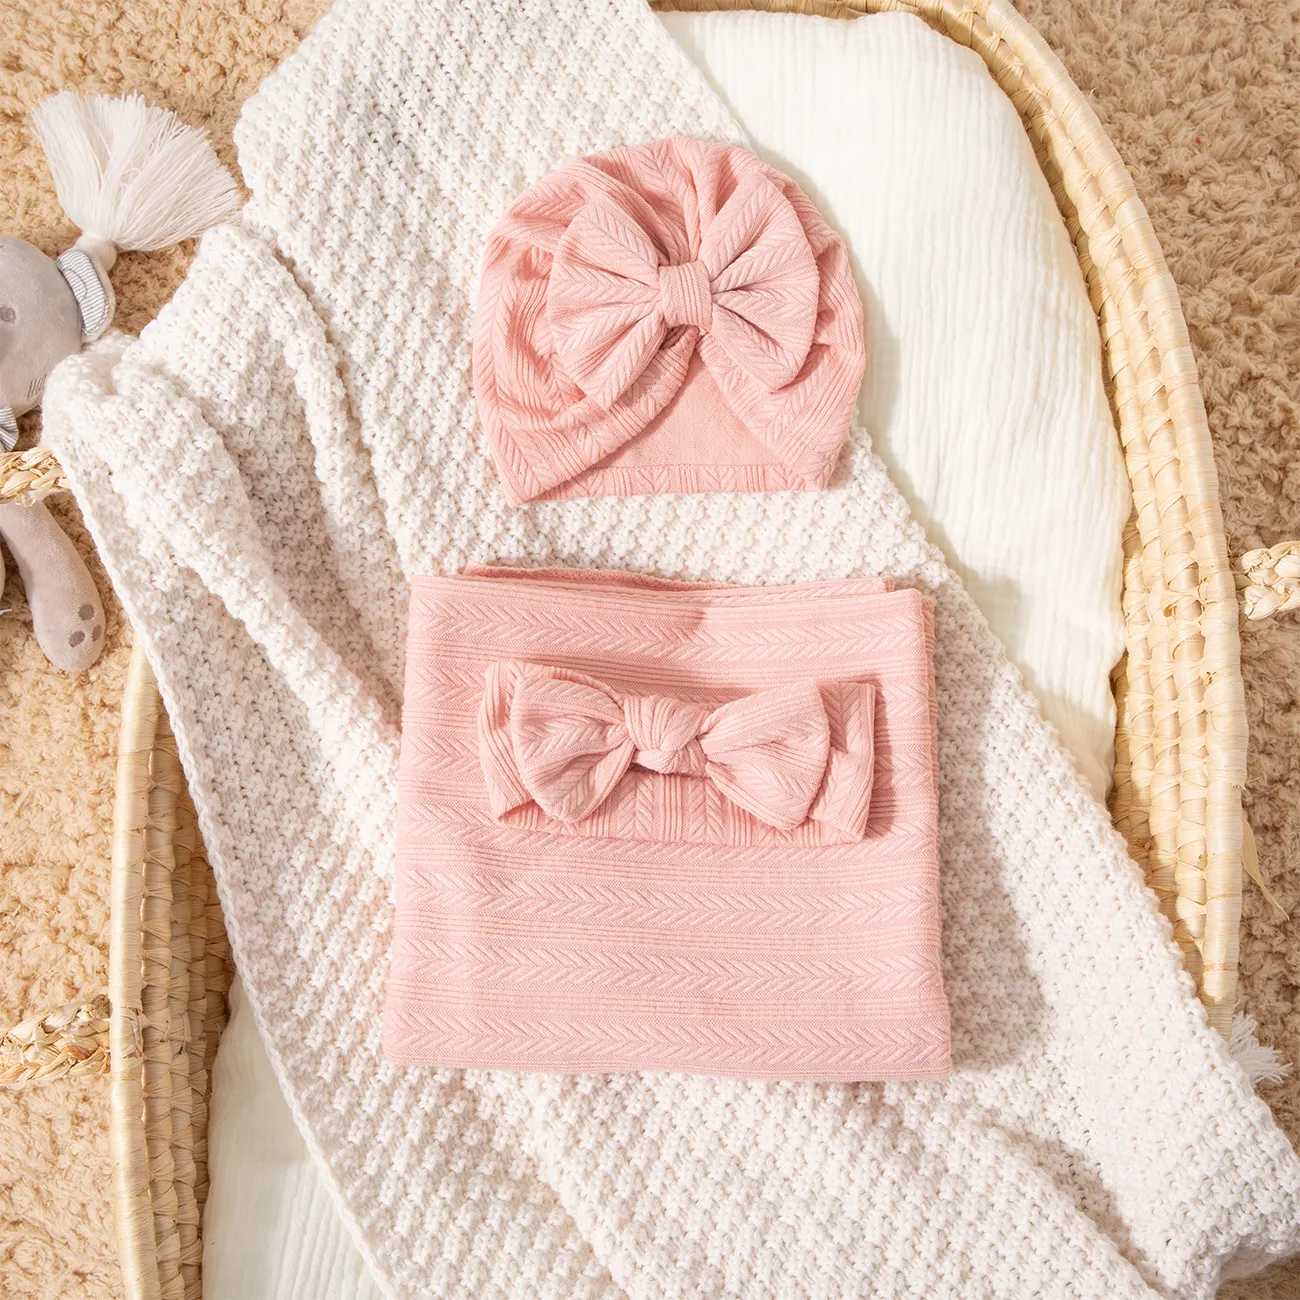 3 Pcs Cotton Baby Swaddle Blanket Set Avec Des Motifs De Texture Uniques